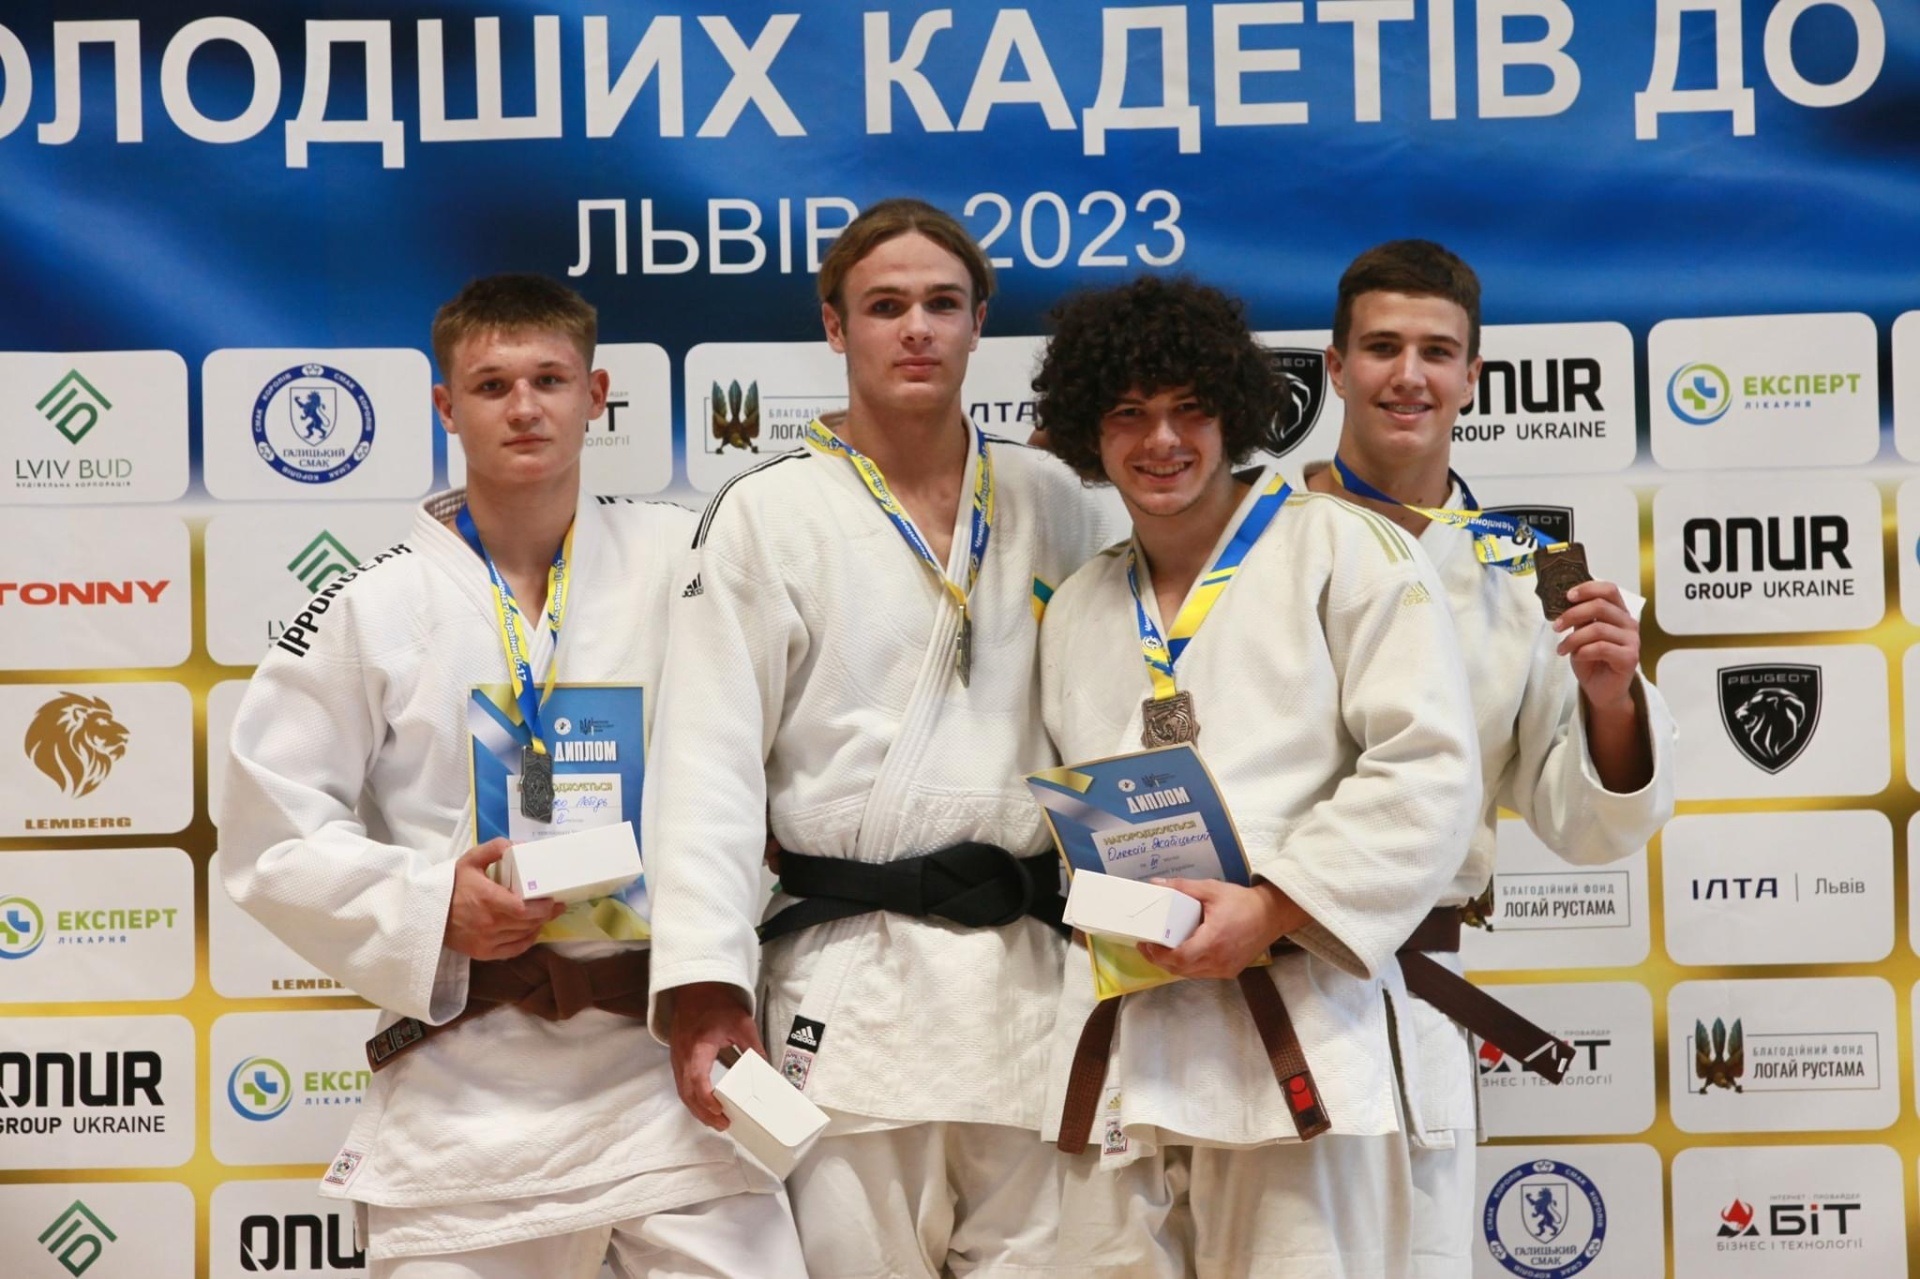 Дніпровські спортсмени вибороли 6 медалей з дзюдо